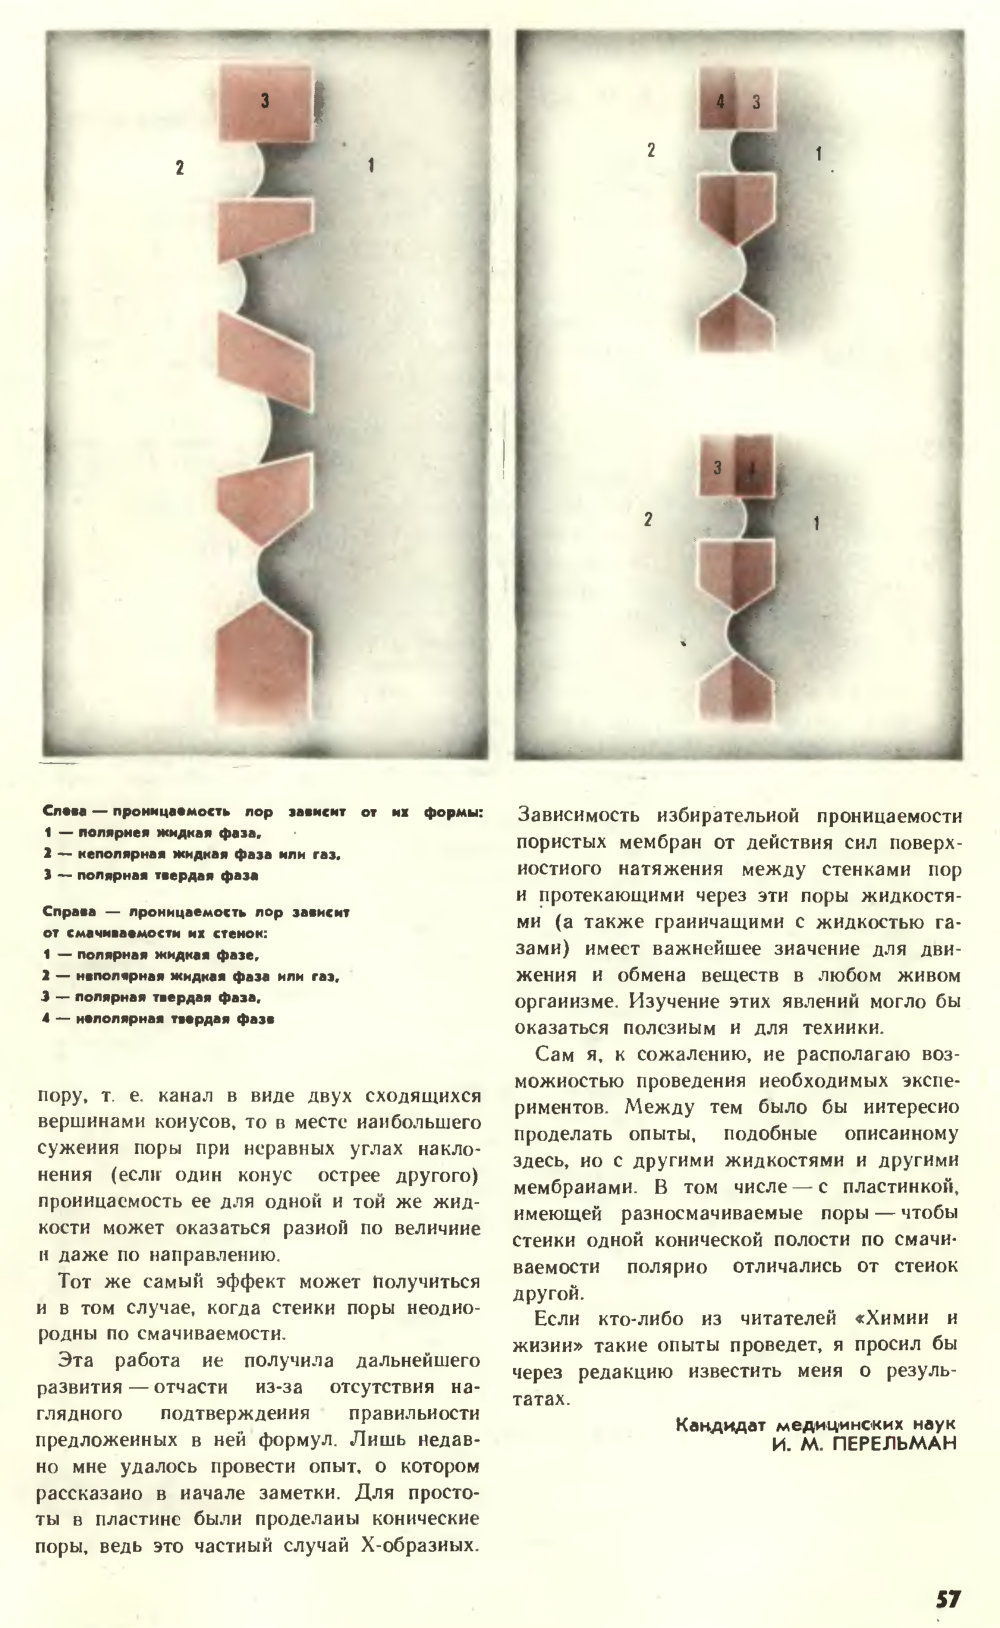 Строптивая вода. И.М. Перельман. Химия и жизнь, 1977, №12, с.56-57. Фотокопия №2